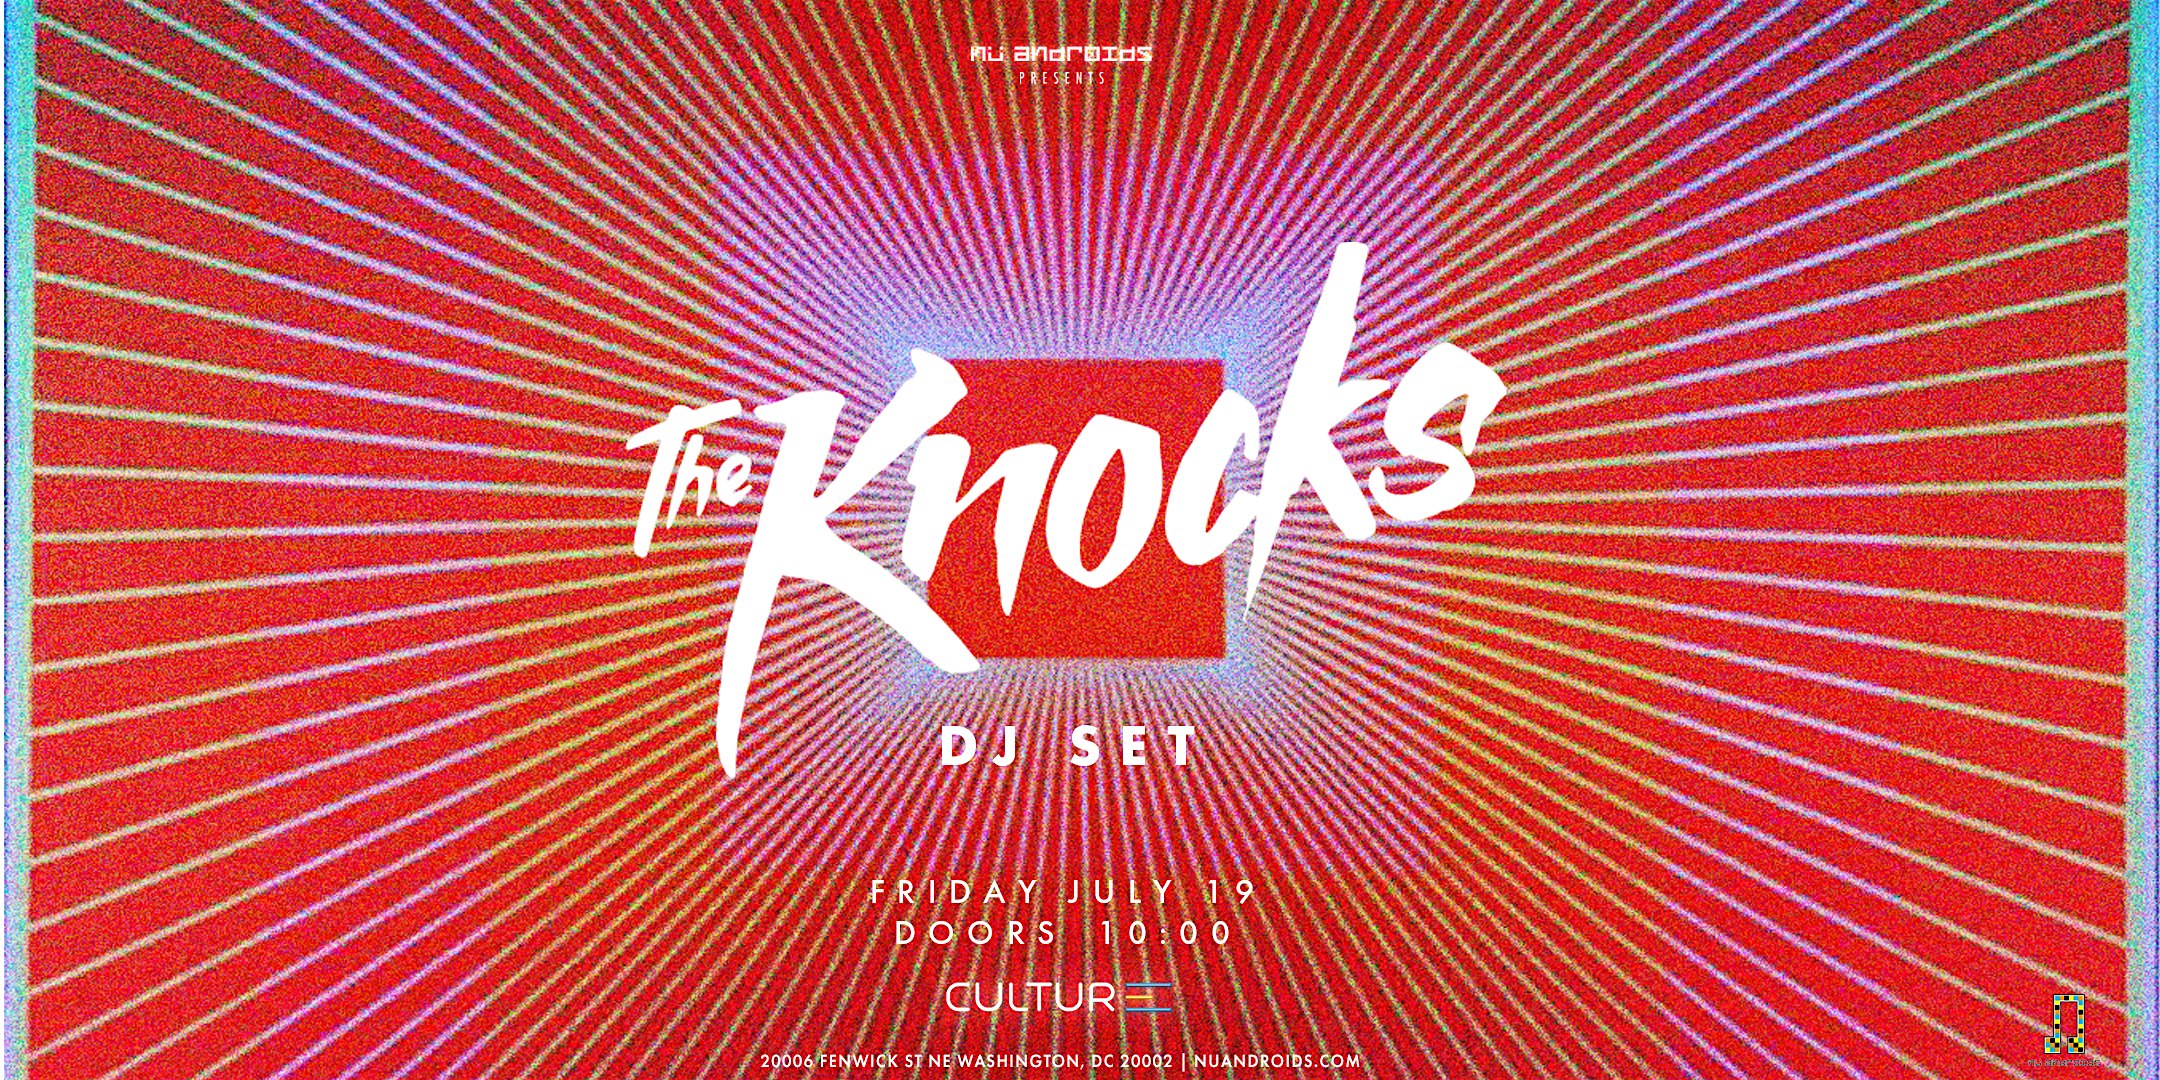 N\u00fc Androids presents: The Knocks (DJ Set)